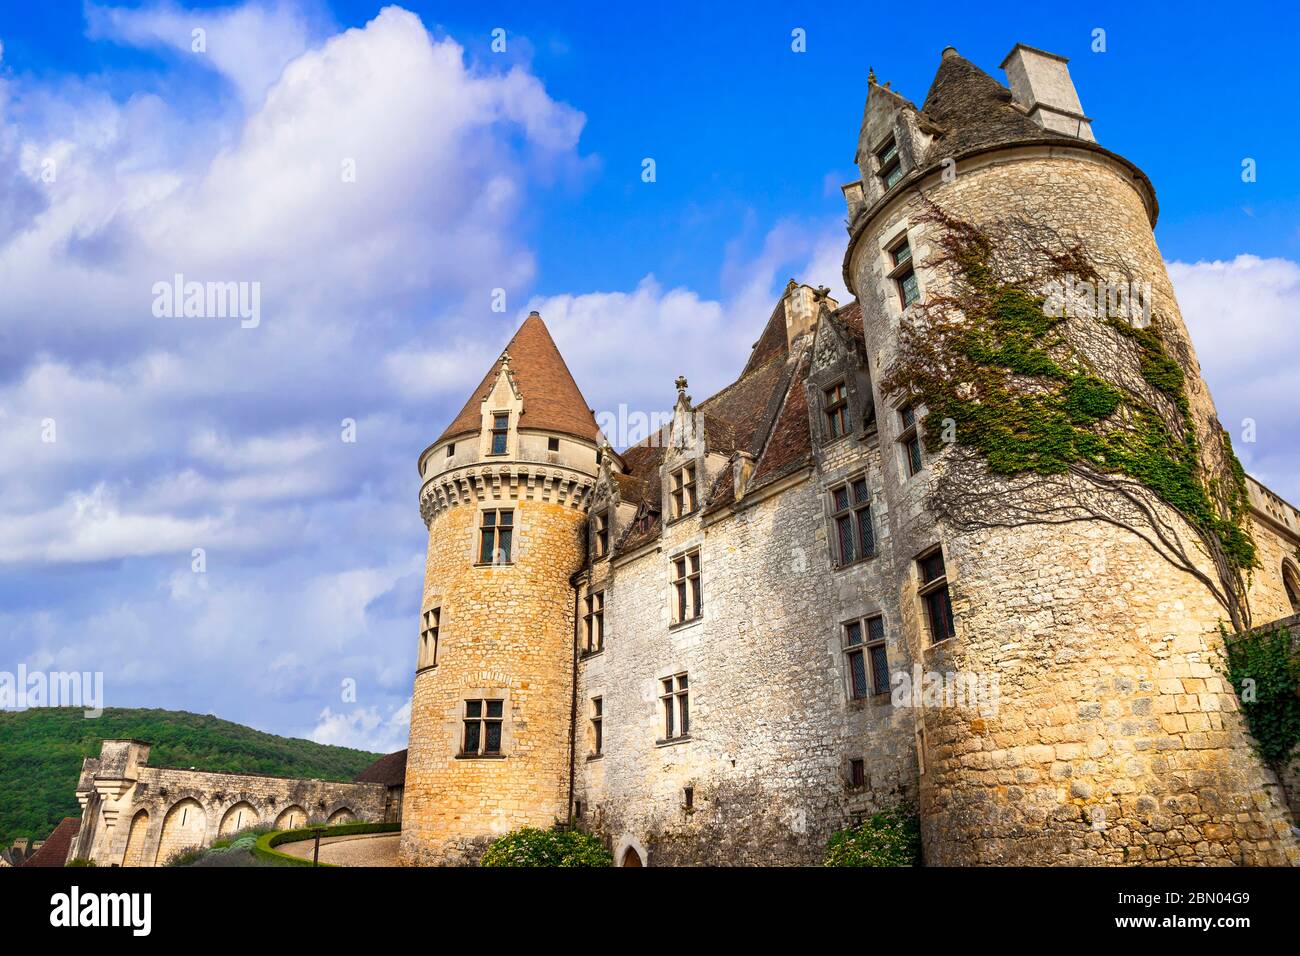 Travel and landmarks of France.  wonderful medieval castle Chateau des Milandes - Dordogne Stock Photo